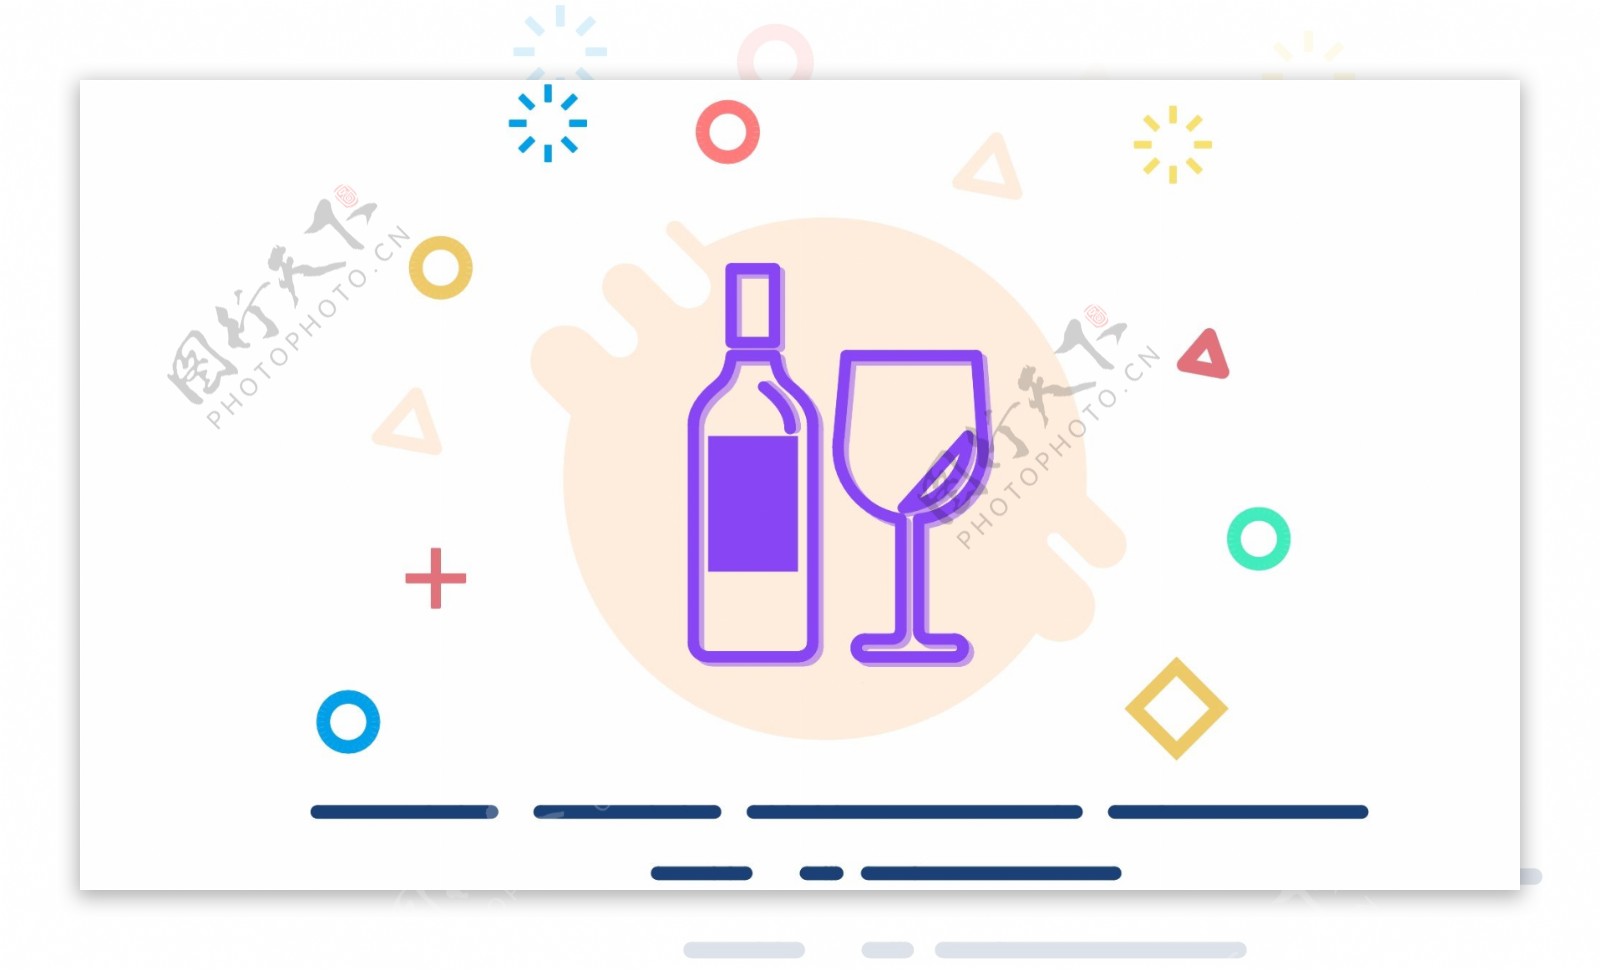 彩色酒瓶UI图标